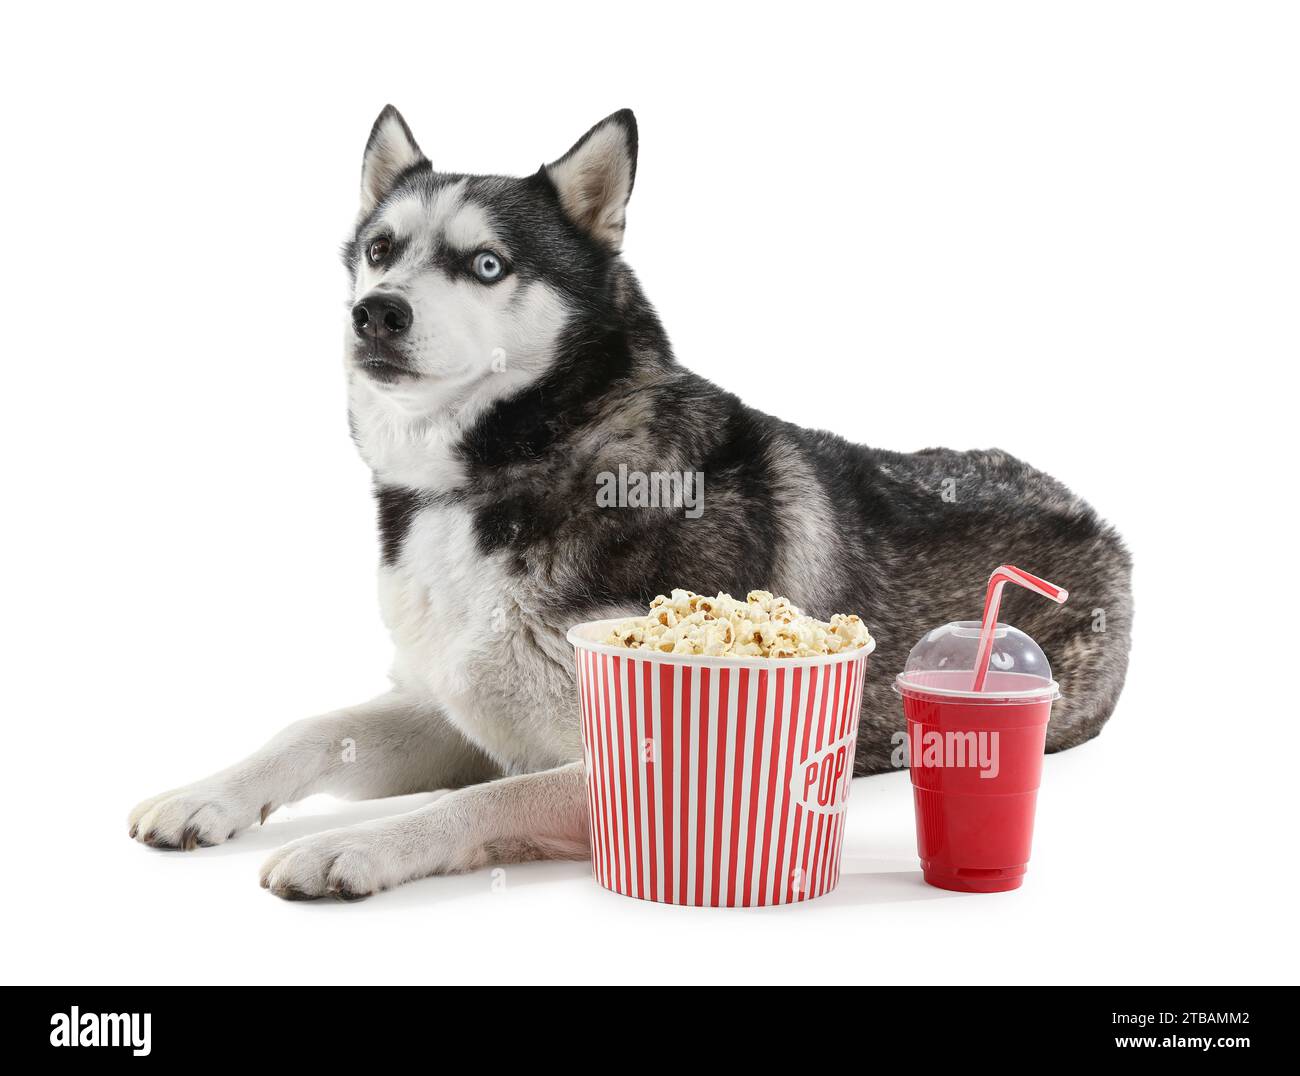 Adorable chien Husky avec seau de pop-corn et cola sur fond blanc Banque D'Images